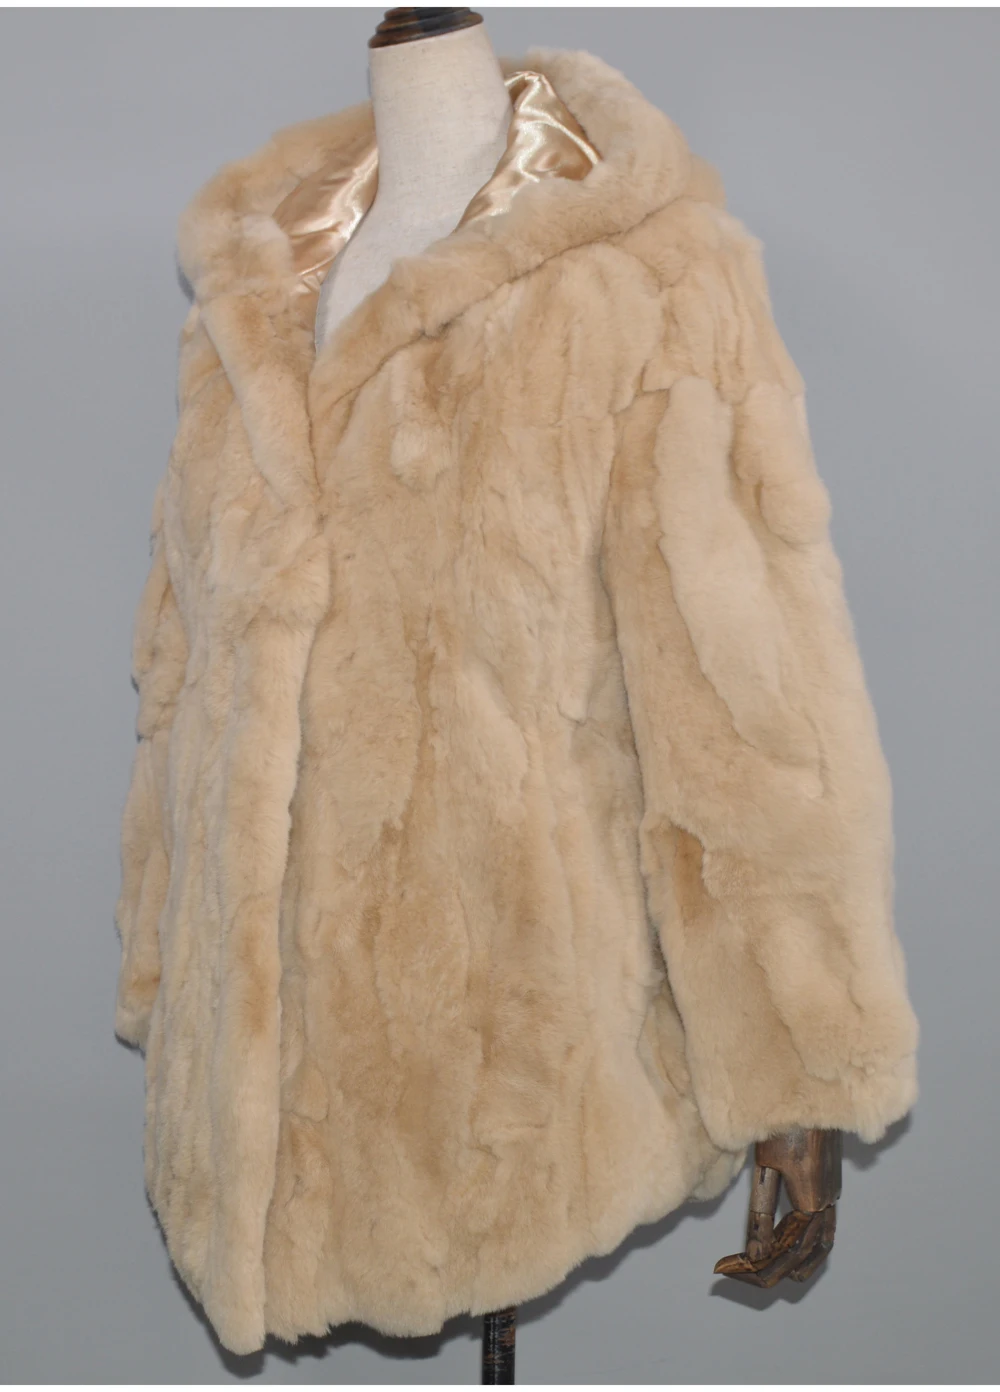 Хорошее качество, женская зимняя длинная куртка из натурального меха Рекс, женская шуба из кролика Рекс, натуральный мех кролика Рекс, пальто с капюшоном